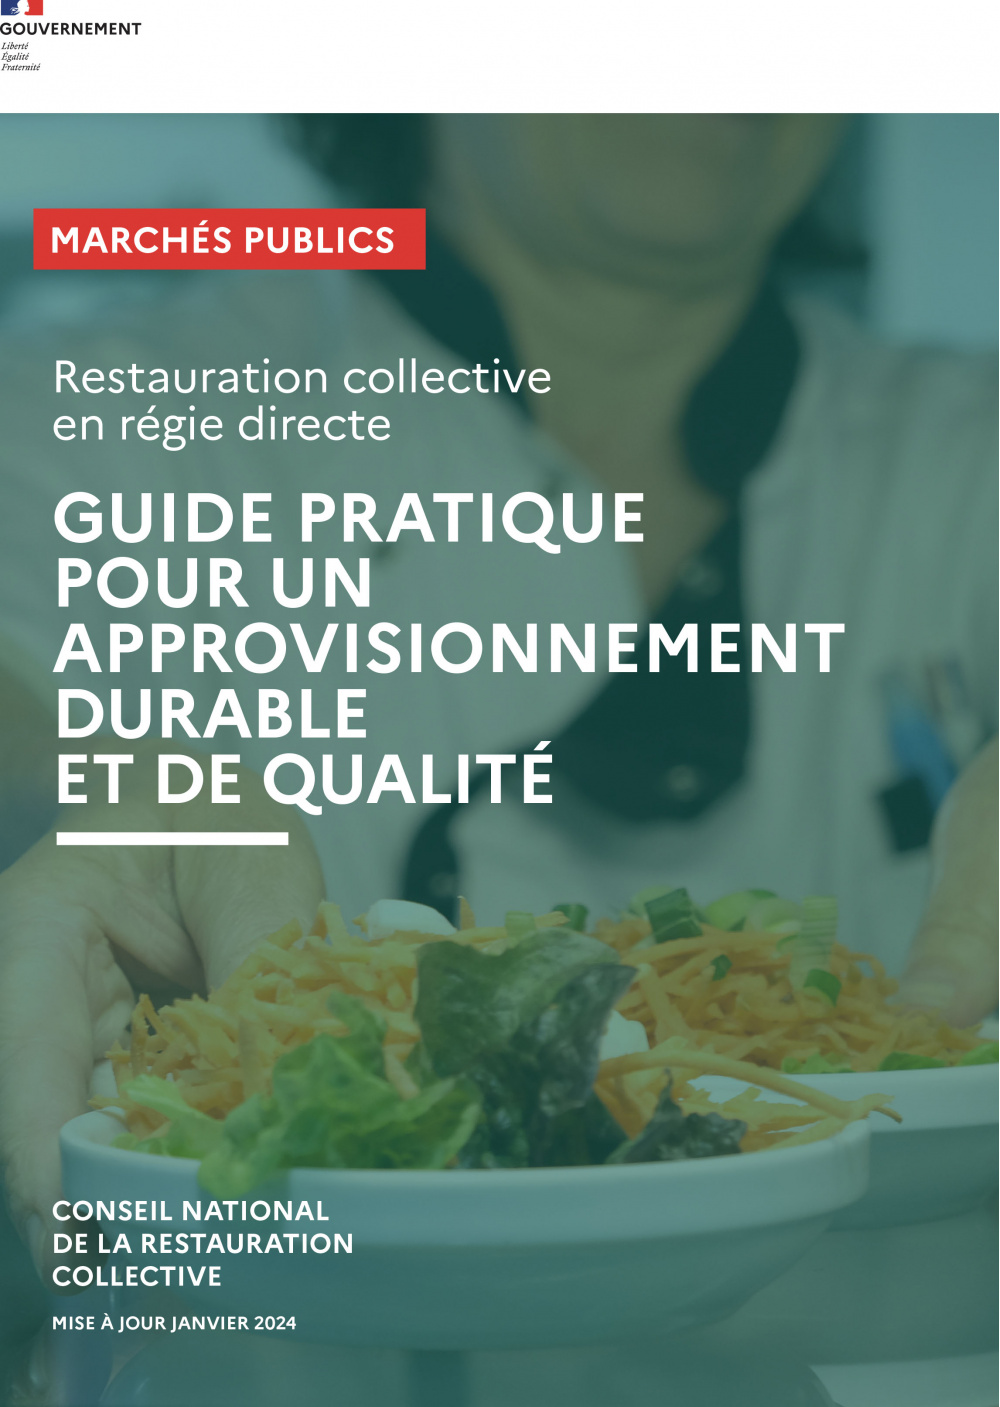 Guide pratique Acheteurs pour la restauration collective en gestion directe/régie directe